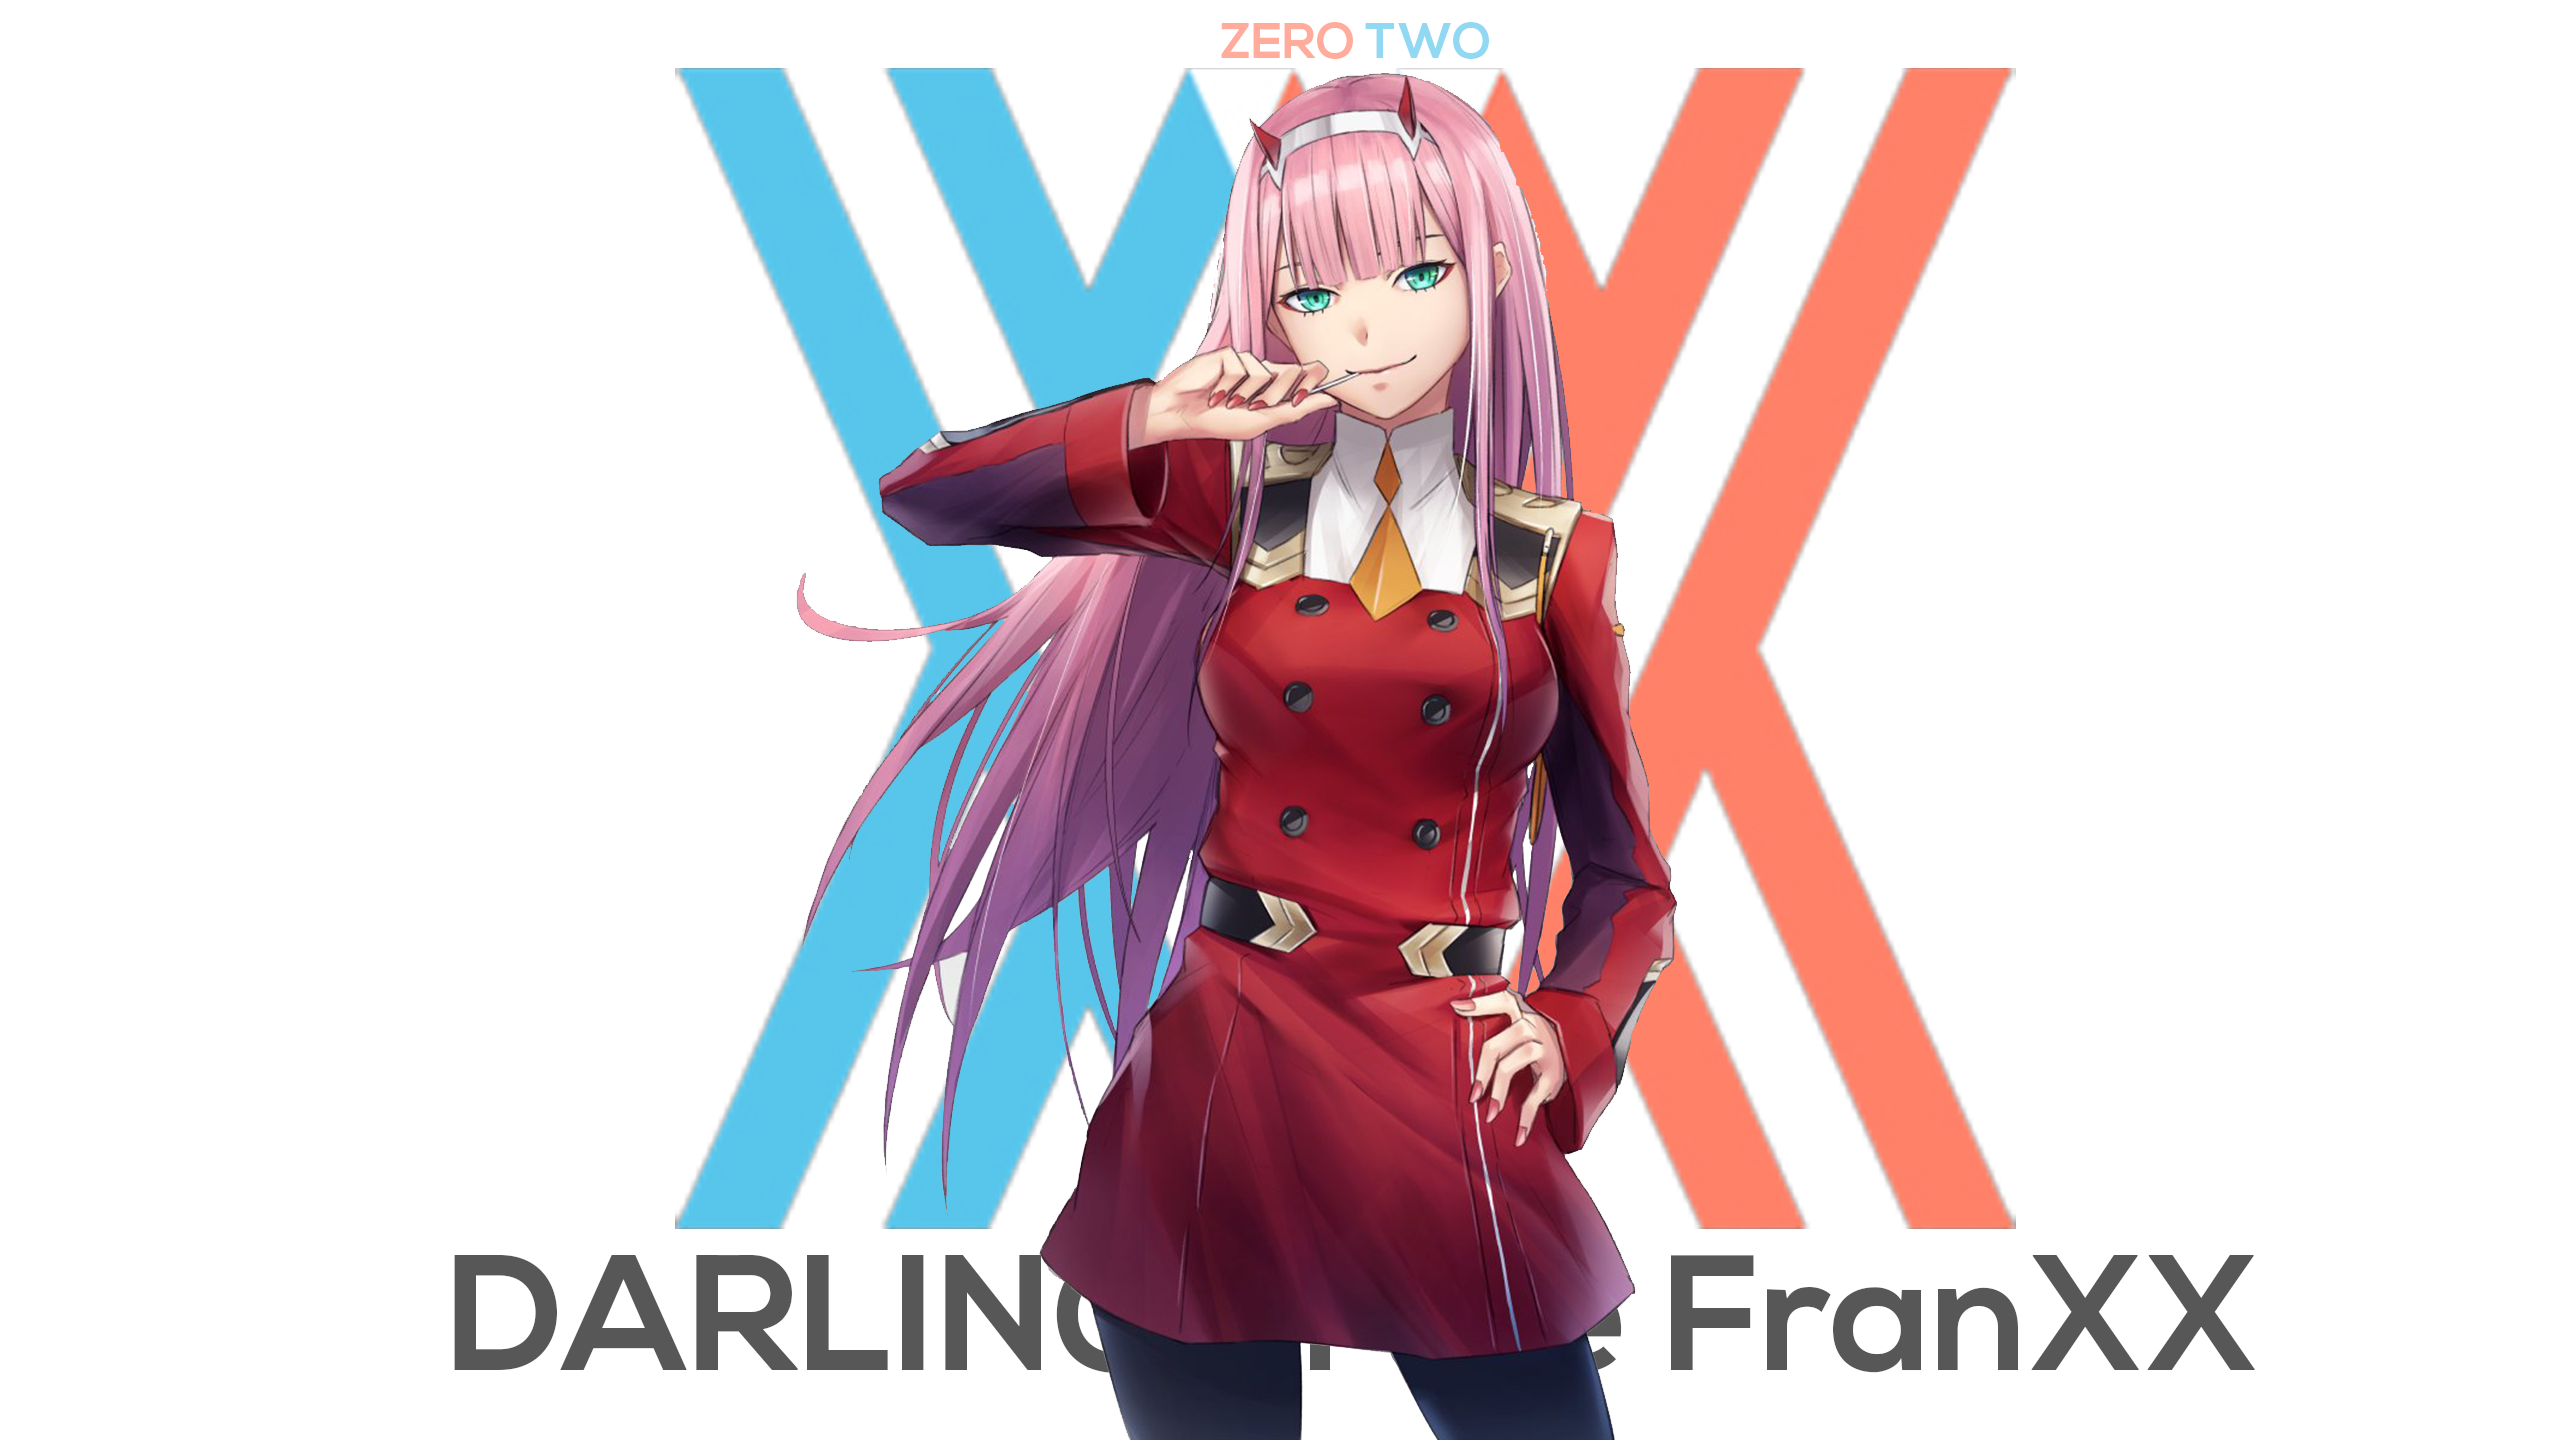 Anime 2560x1440 Darling in the FranXX 2D anime anime girls digital art artwork